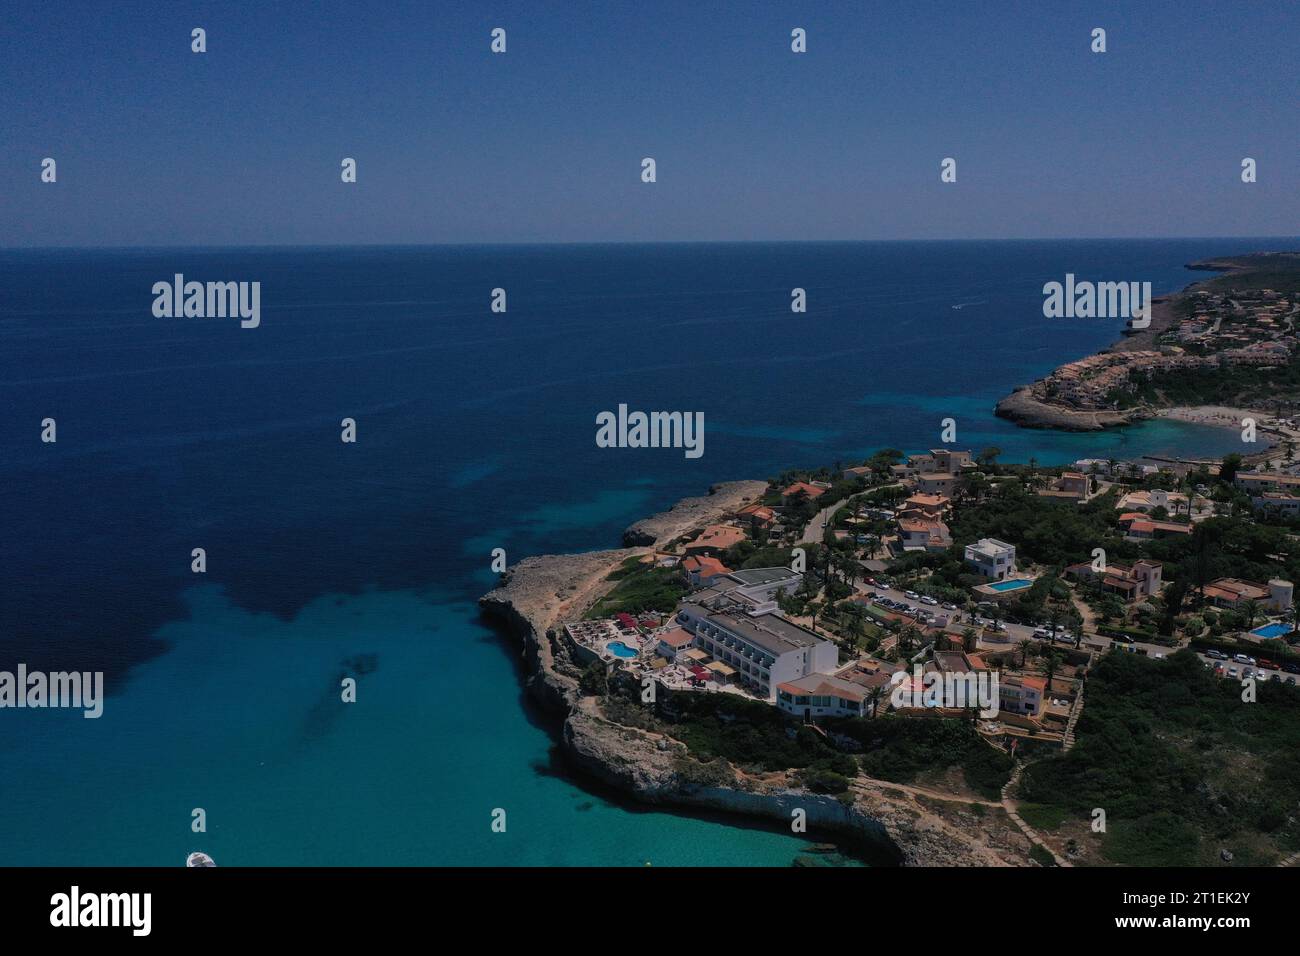 Imagen aerea de playas de Mallorca Stock Photo